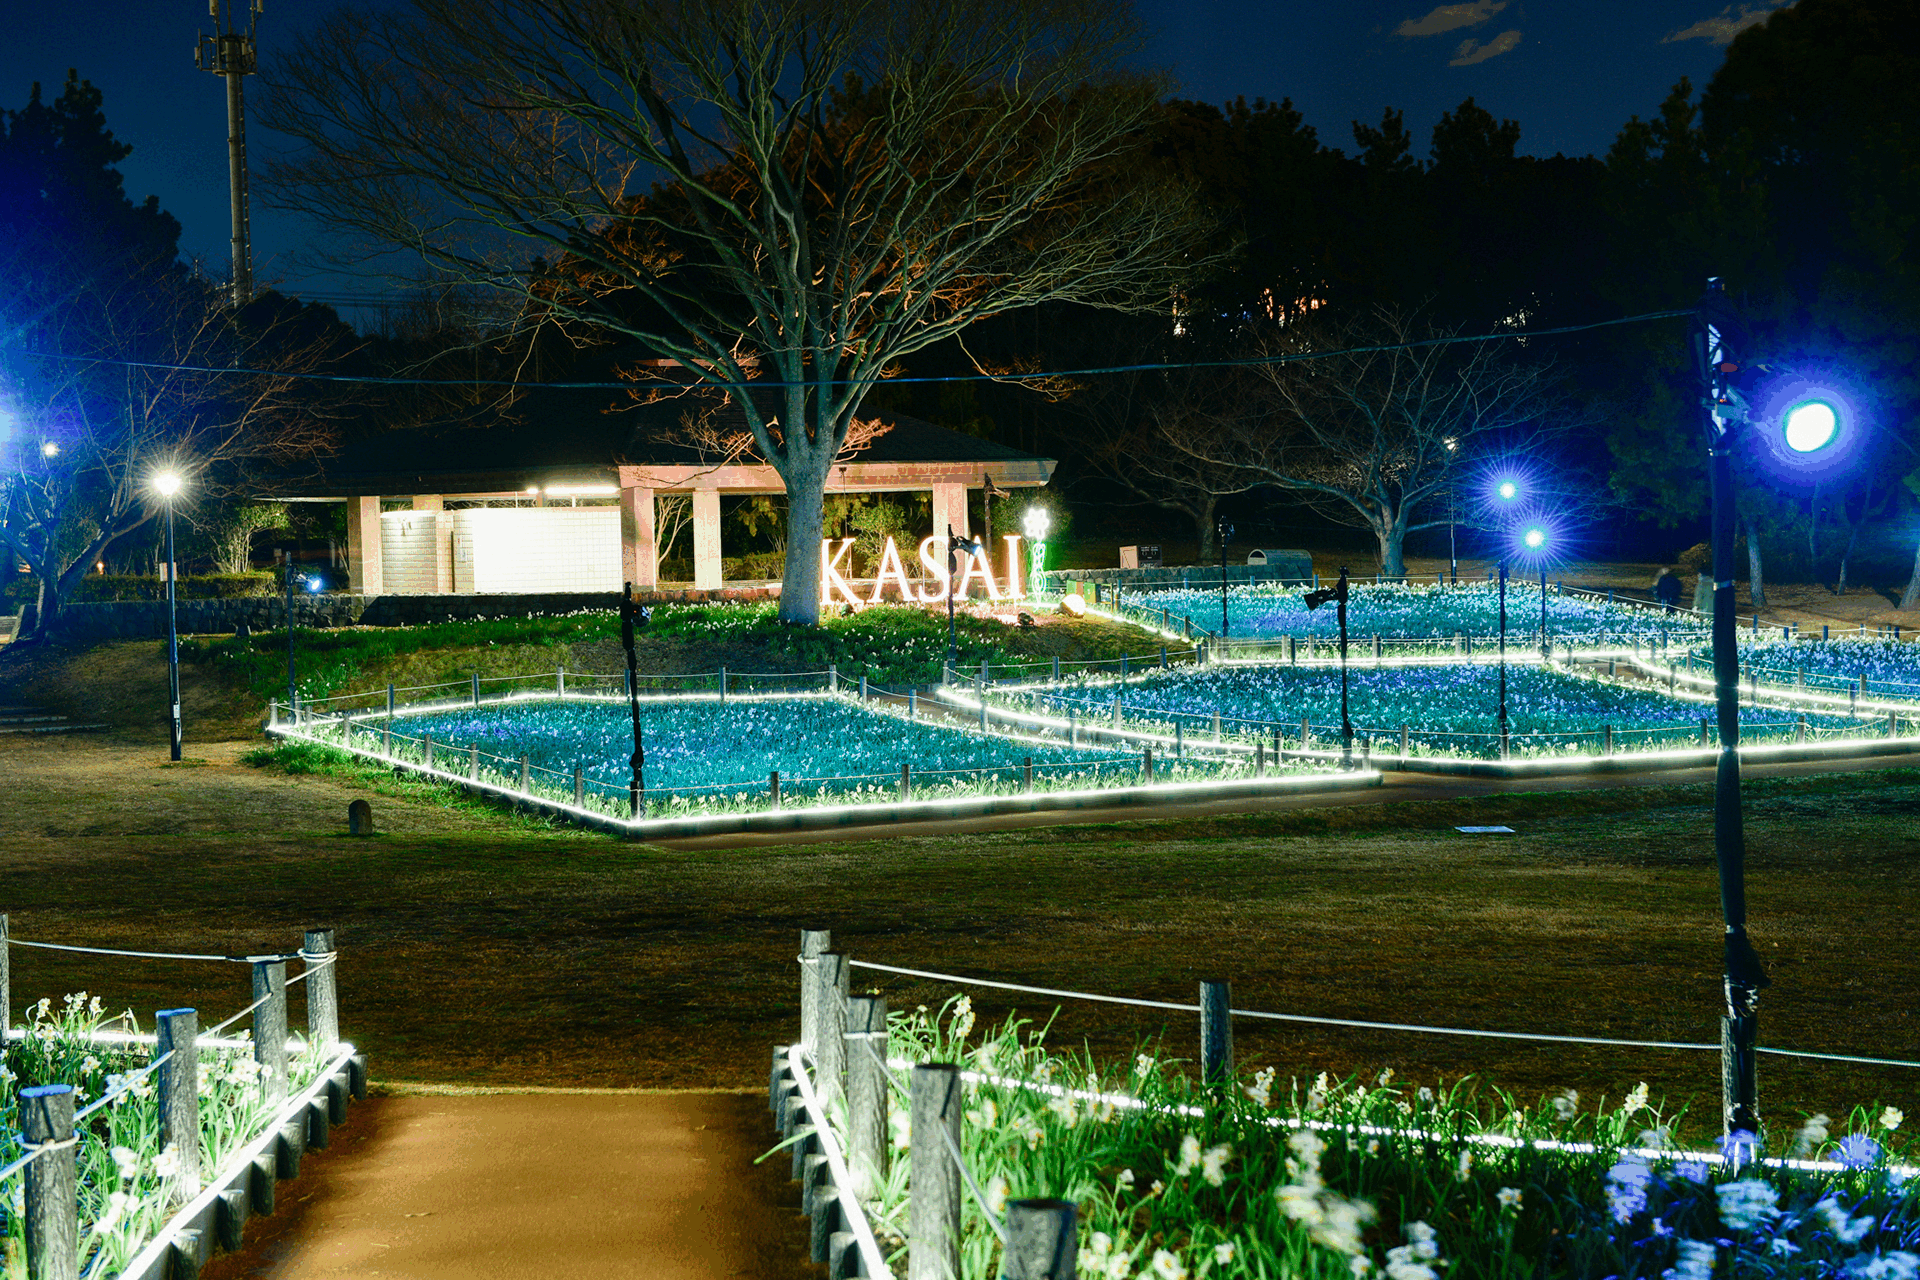 花と光のムーブメント 葛西臨海公園